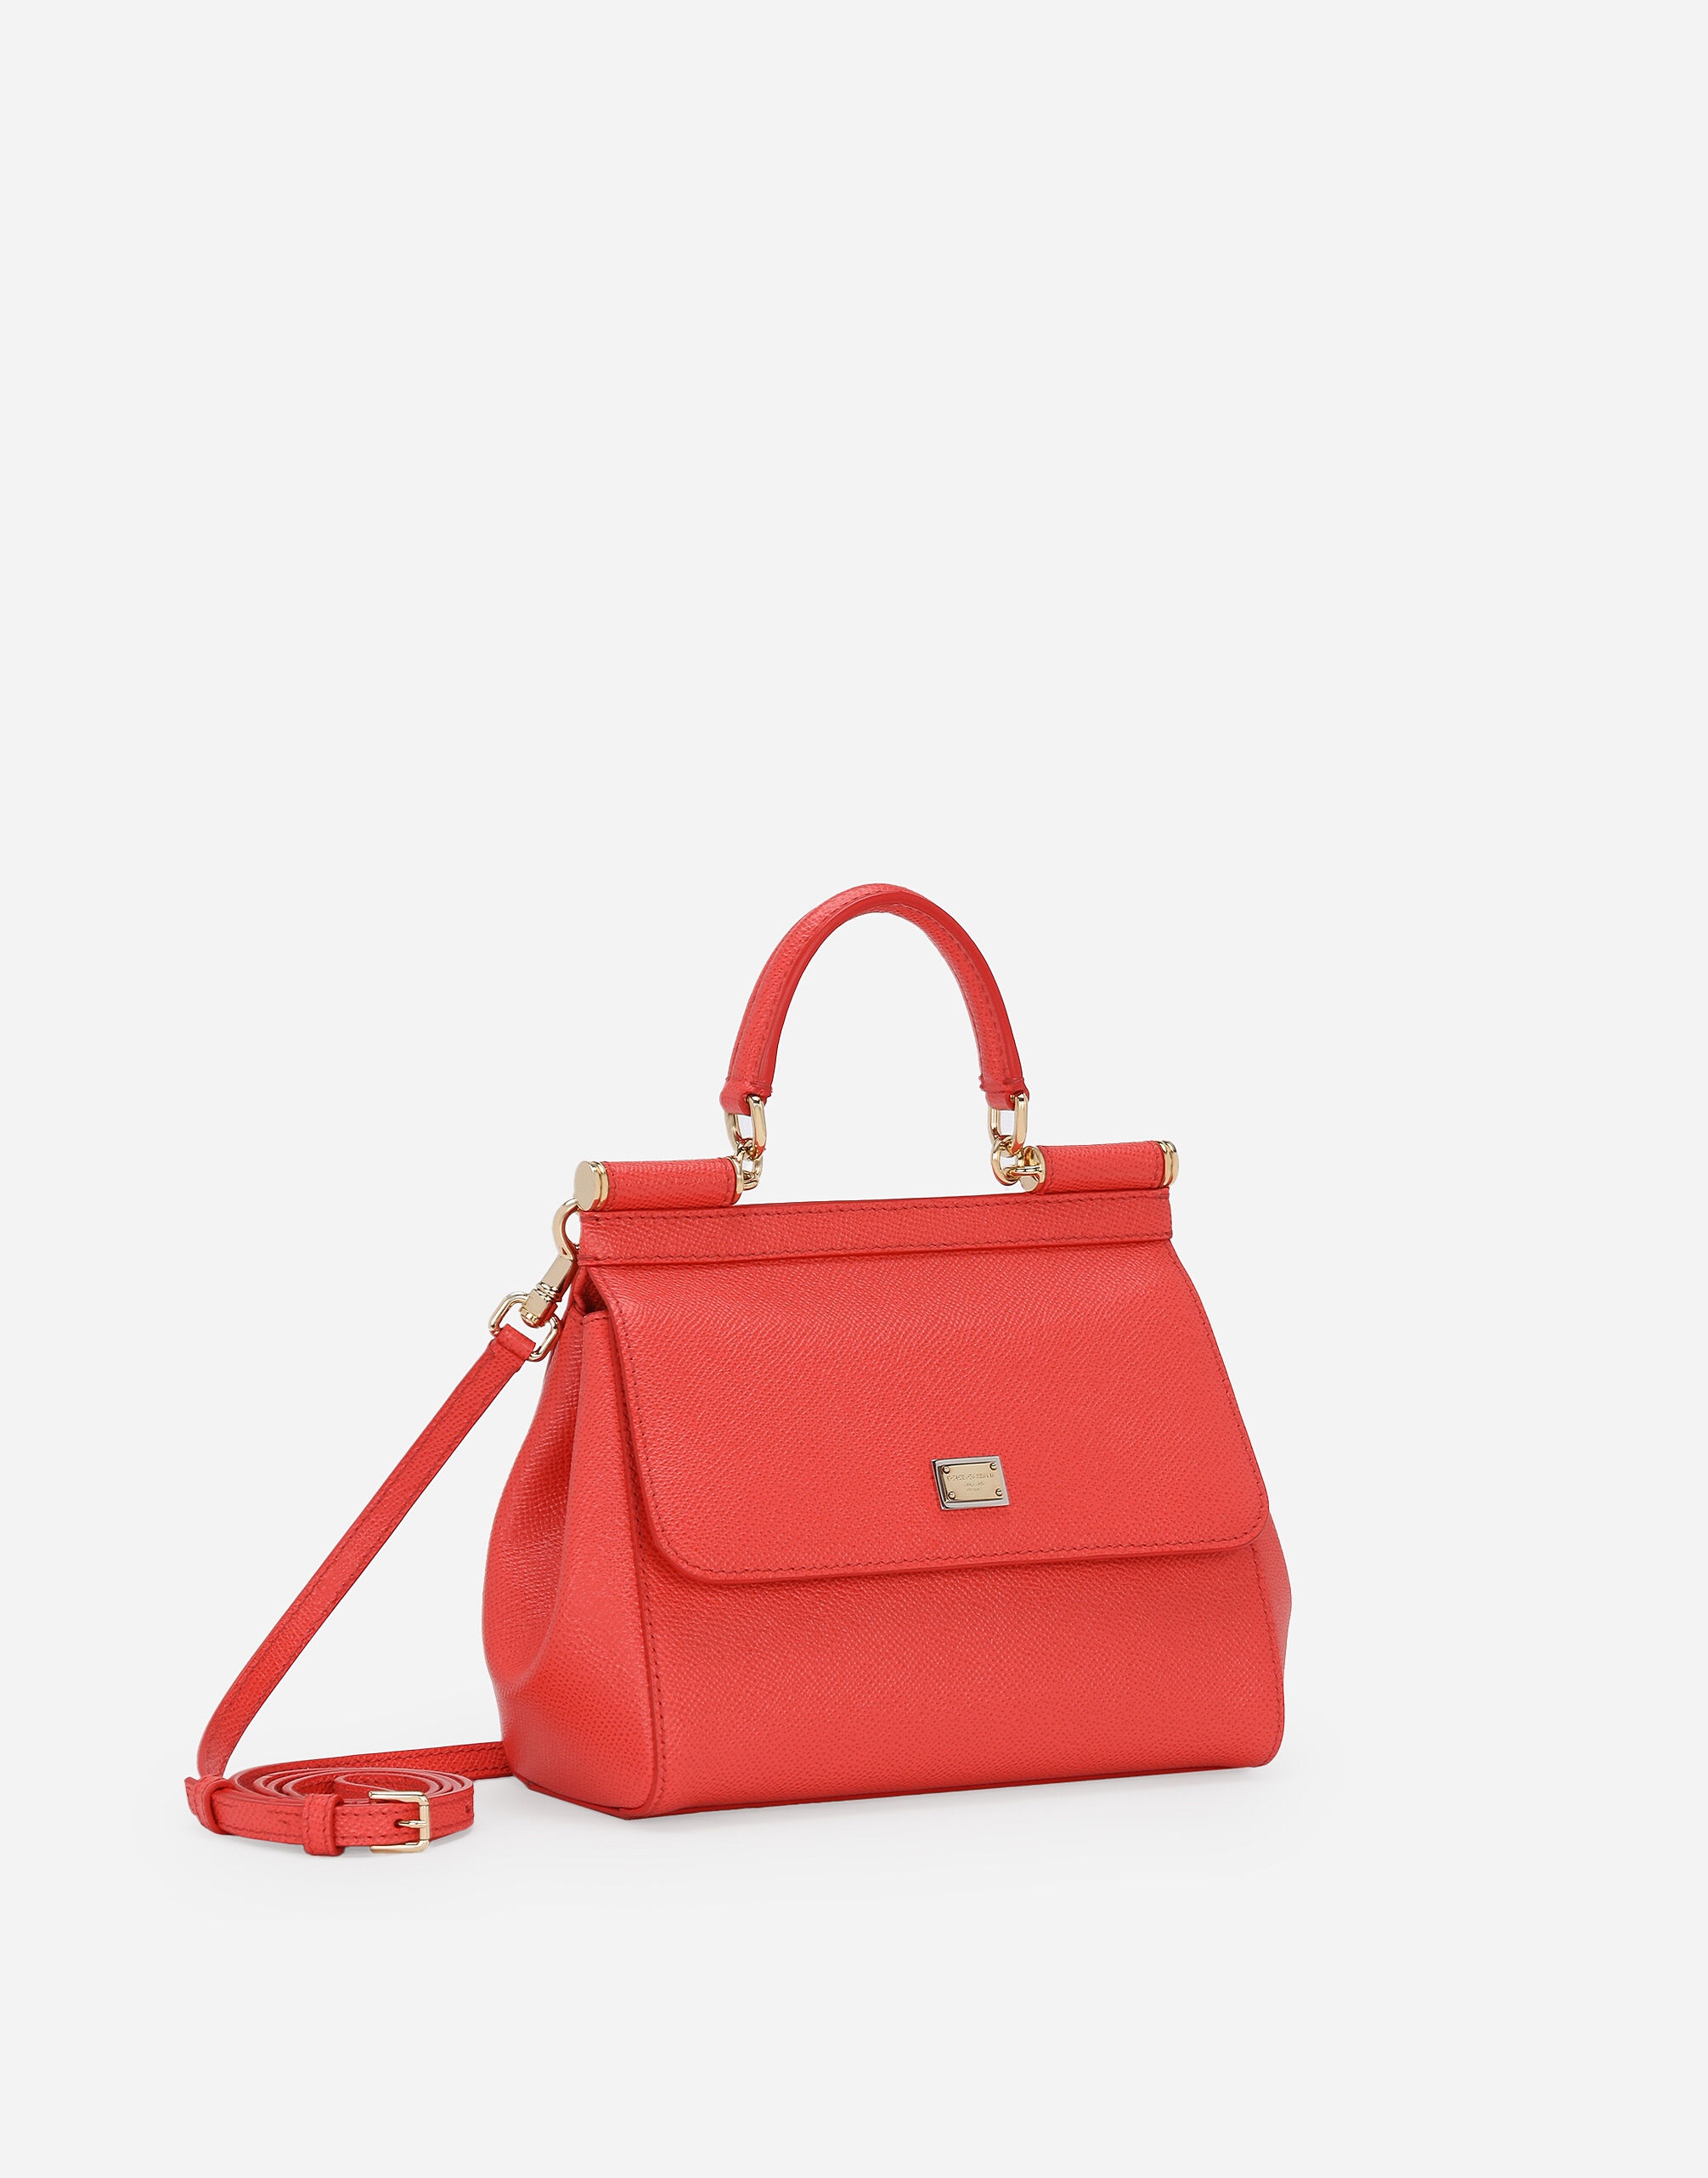 Medium Sicily handbag - 2